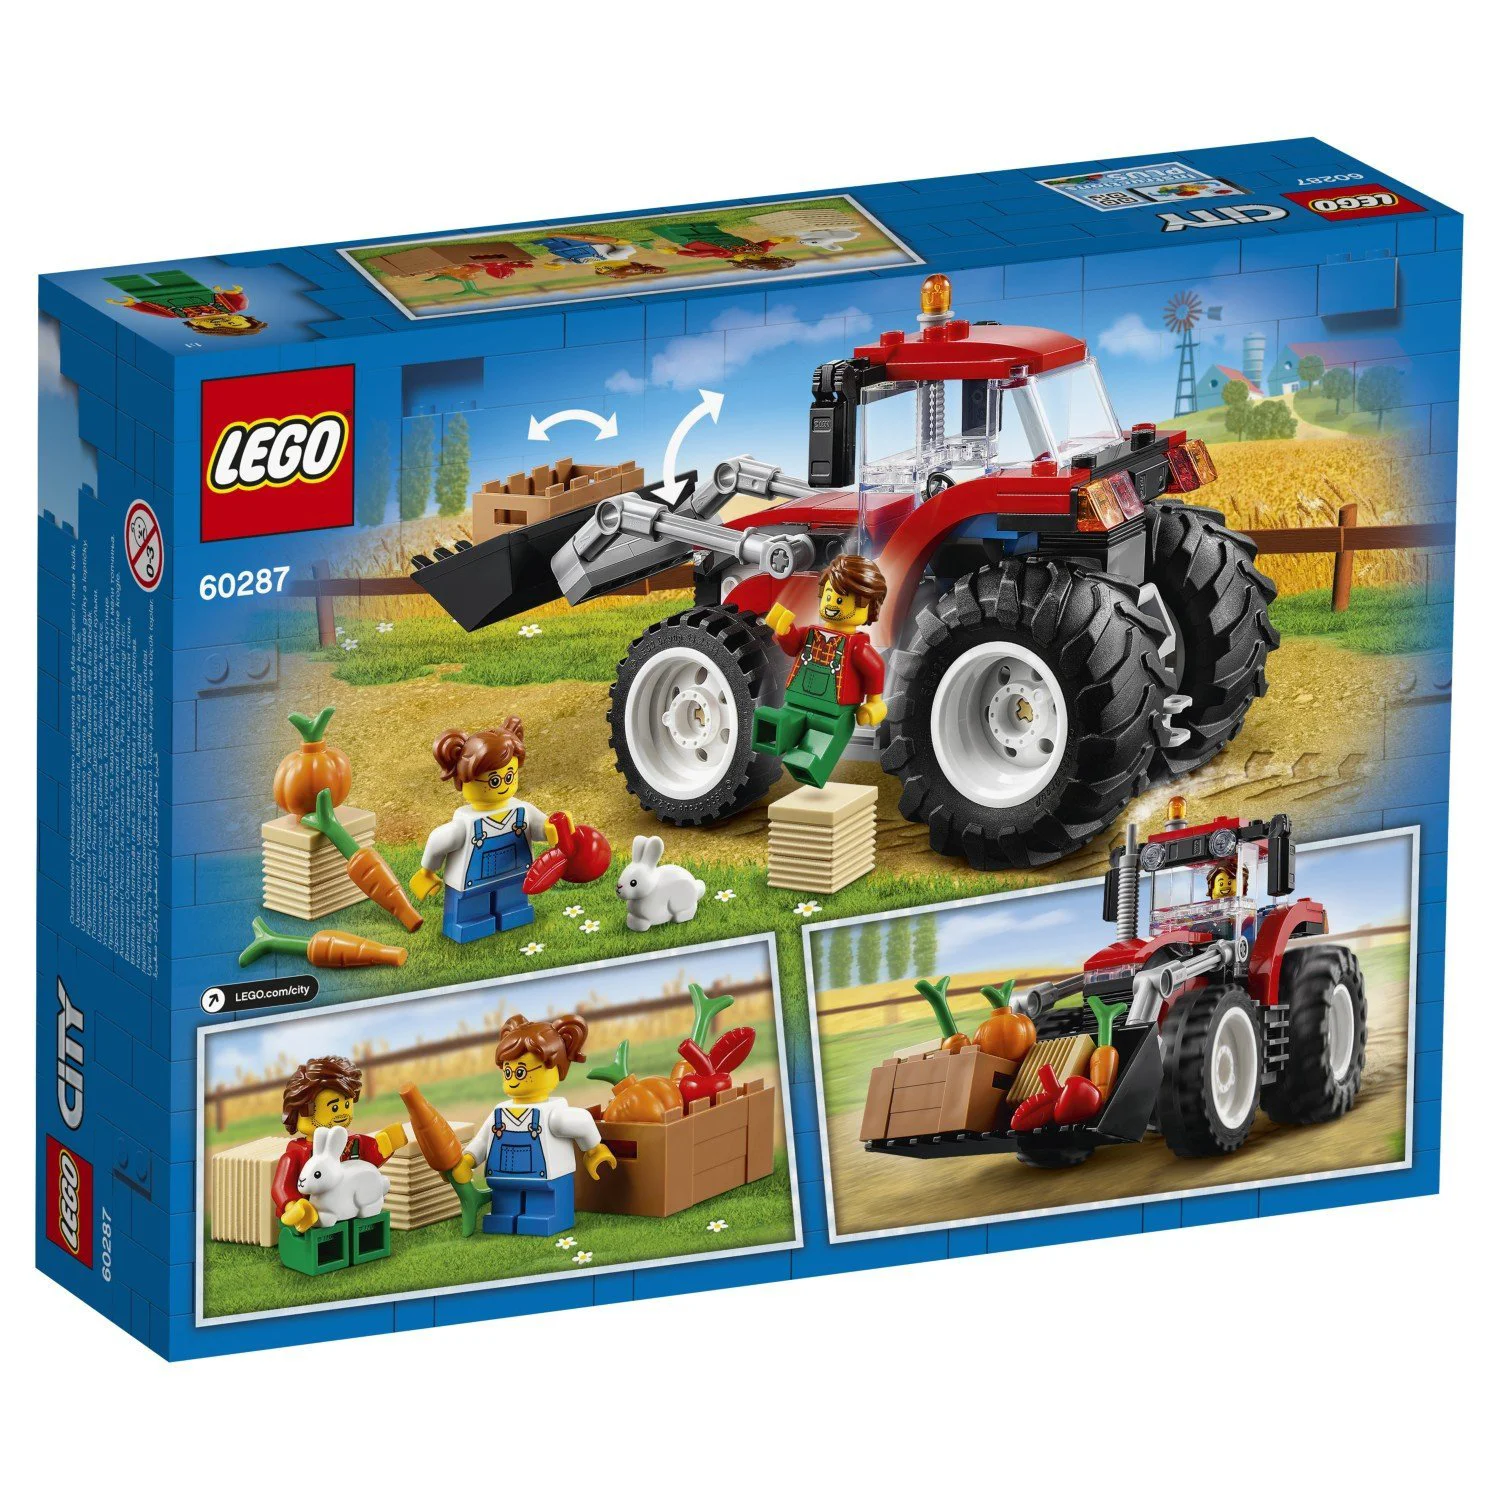 LEGO City Трактор